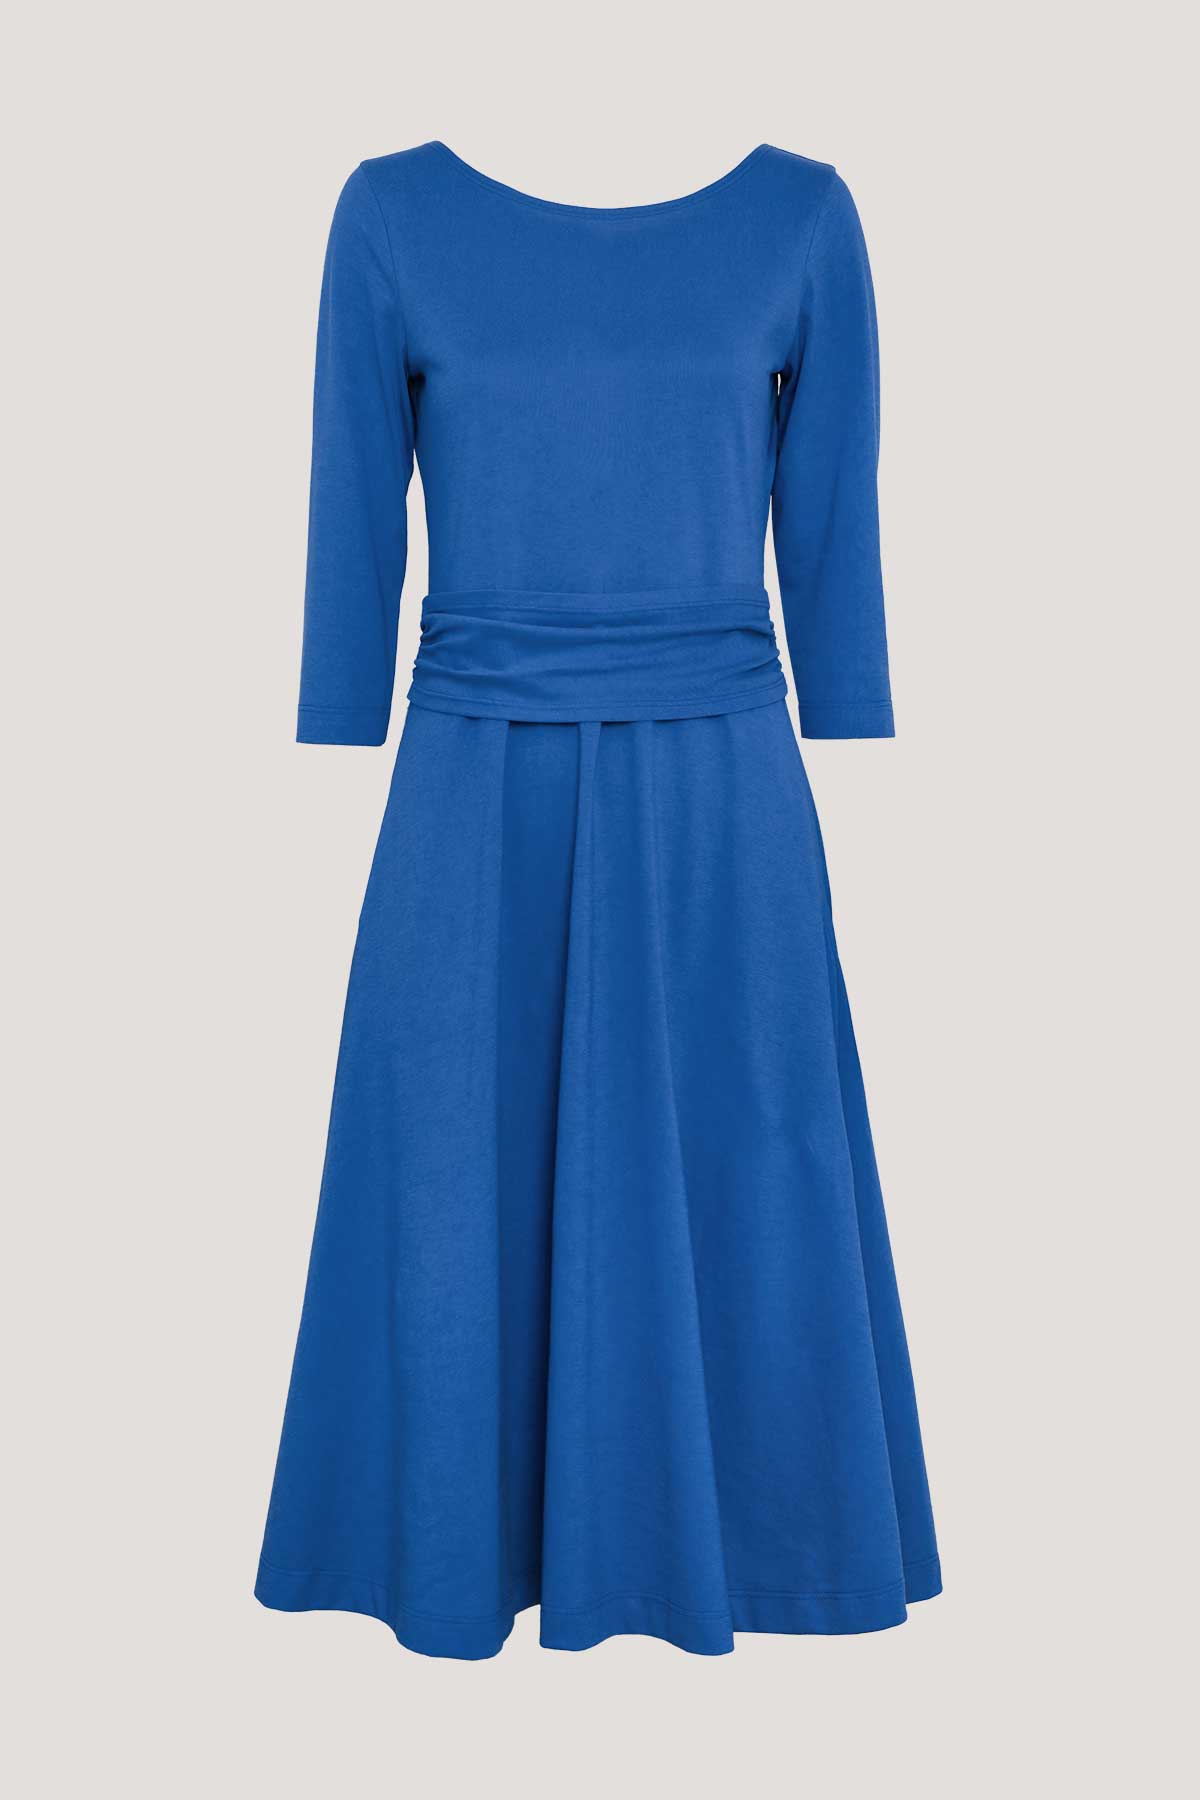 Anissa Dress Azure Blue